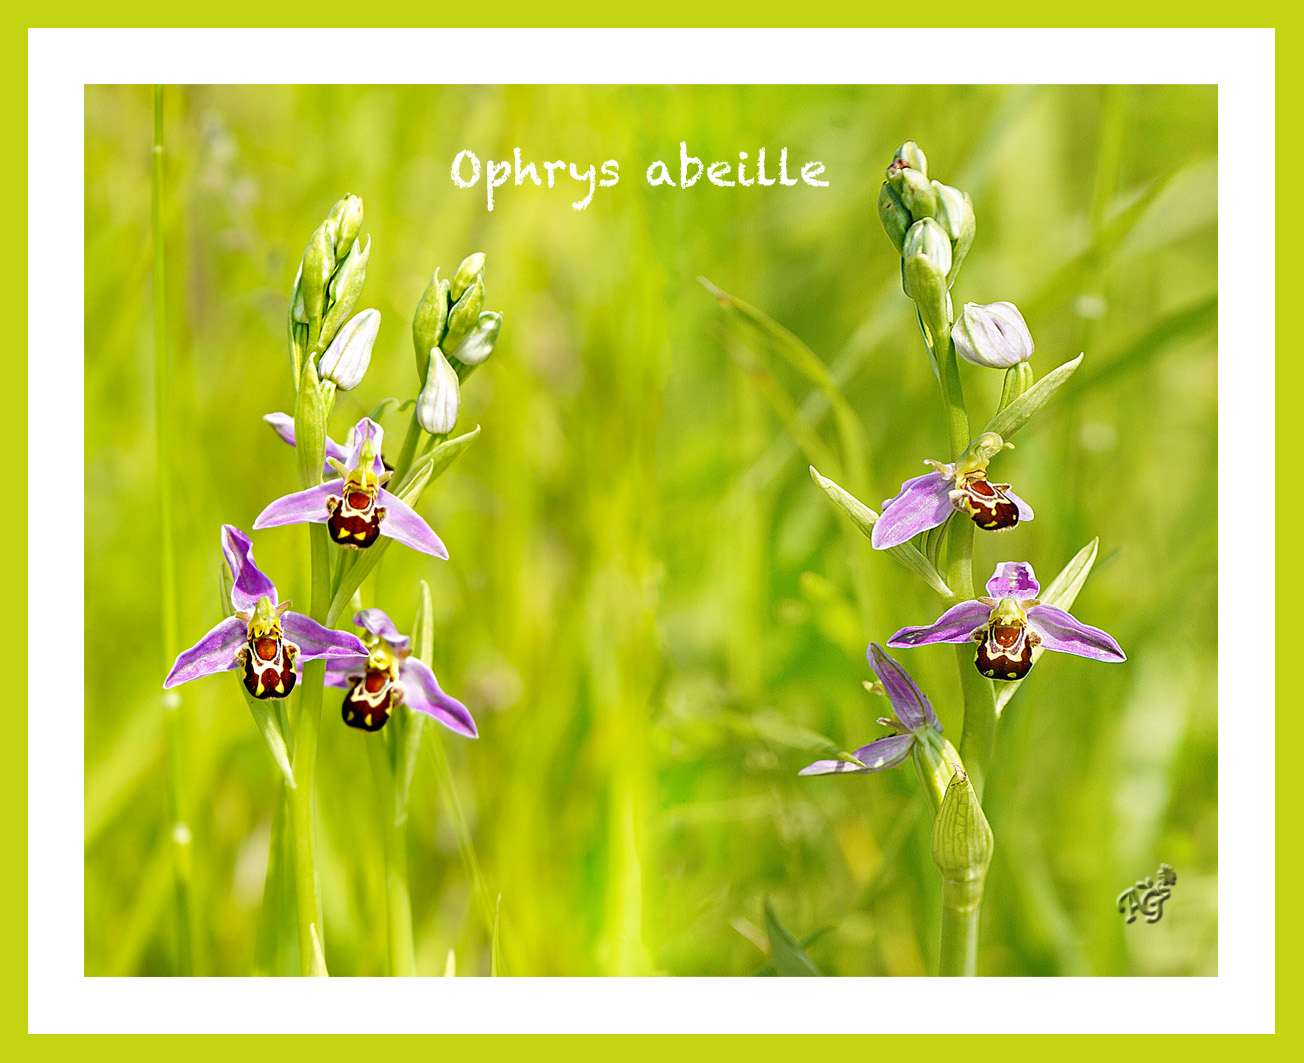 Dans la nature, l'ophrys abeille....